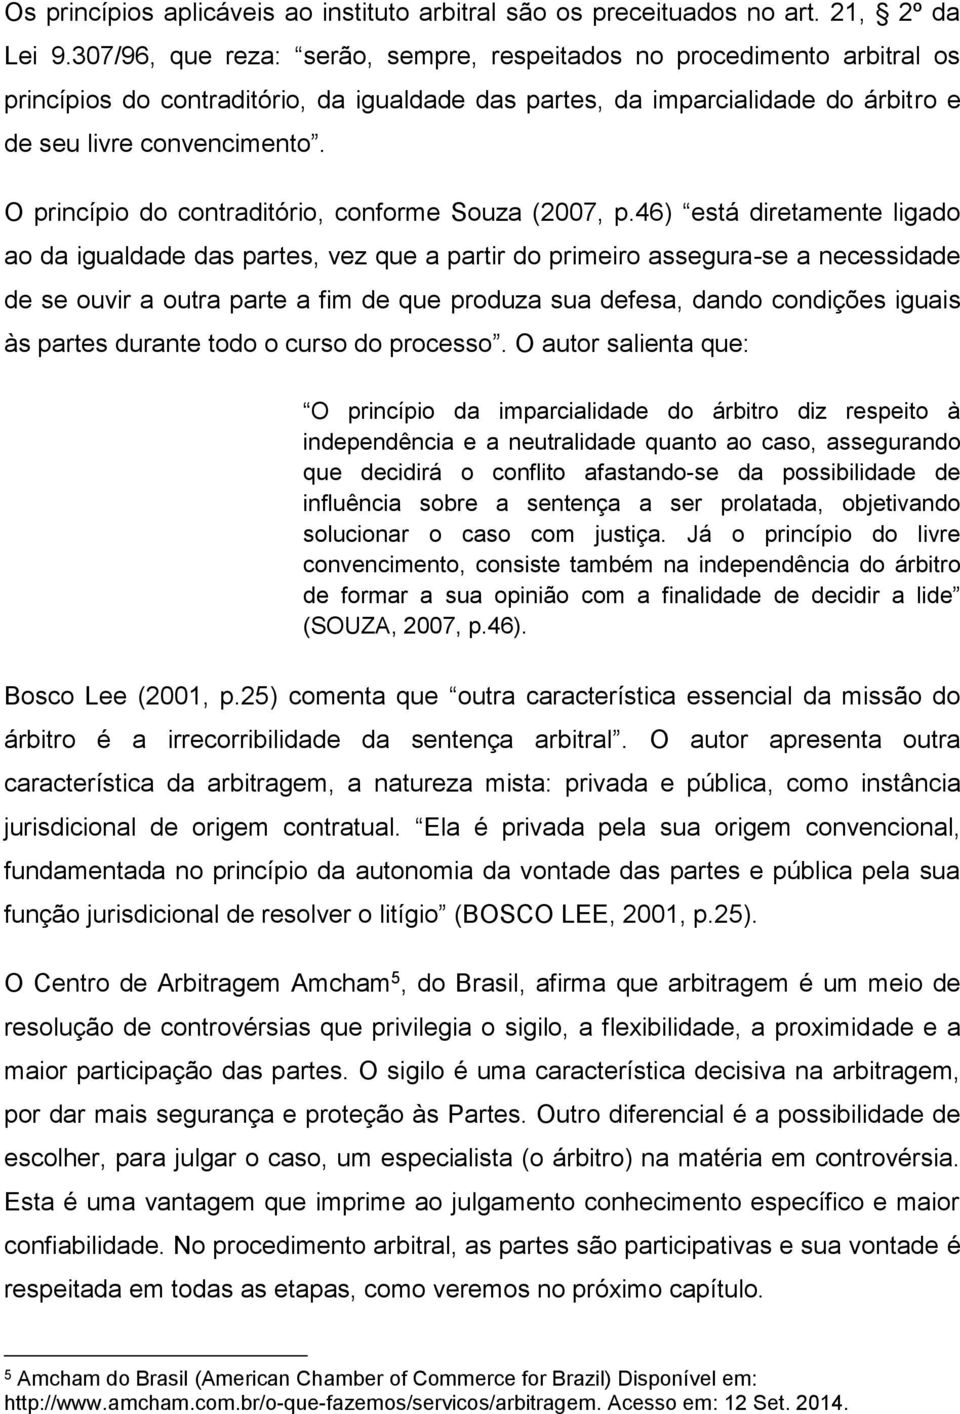 O princípio do contraditório, conforme Souza (2007, p.